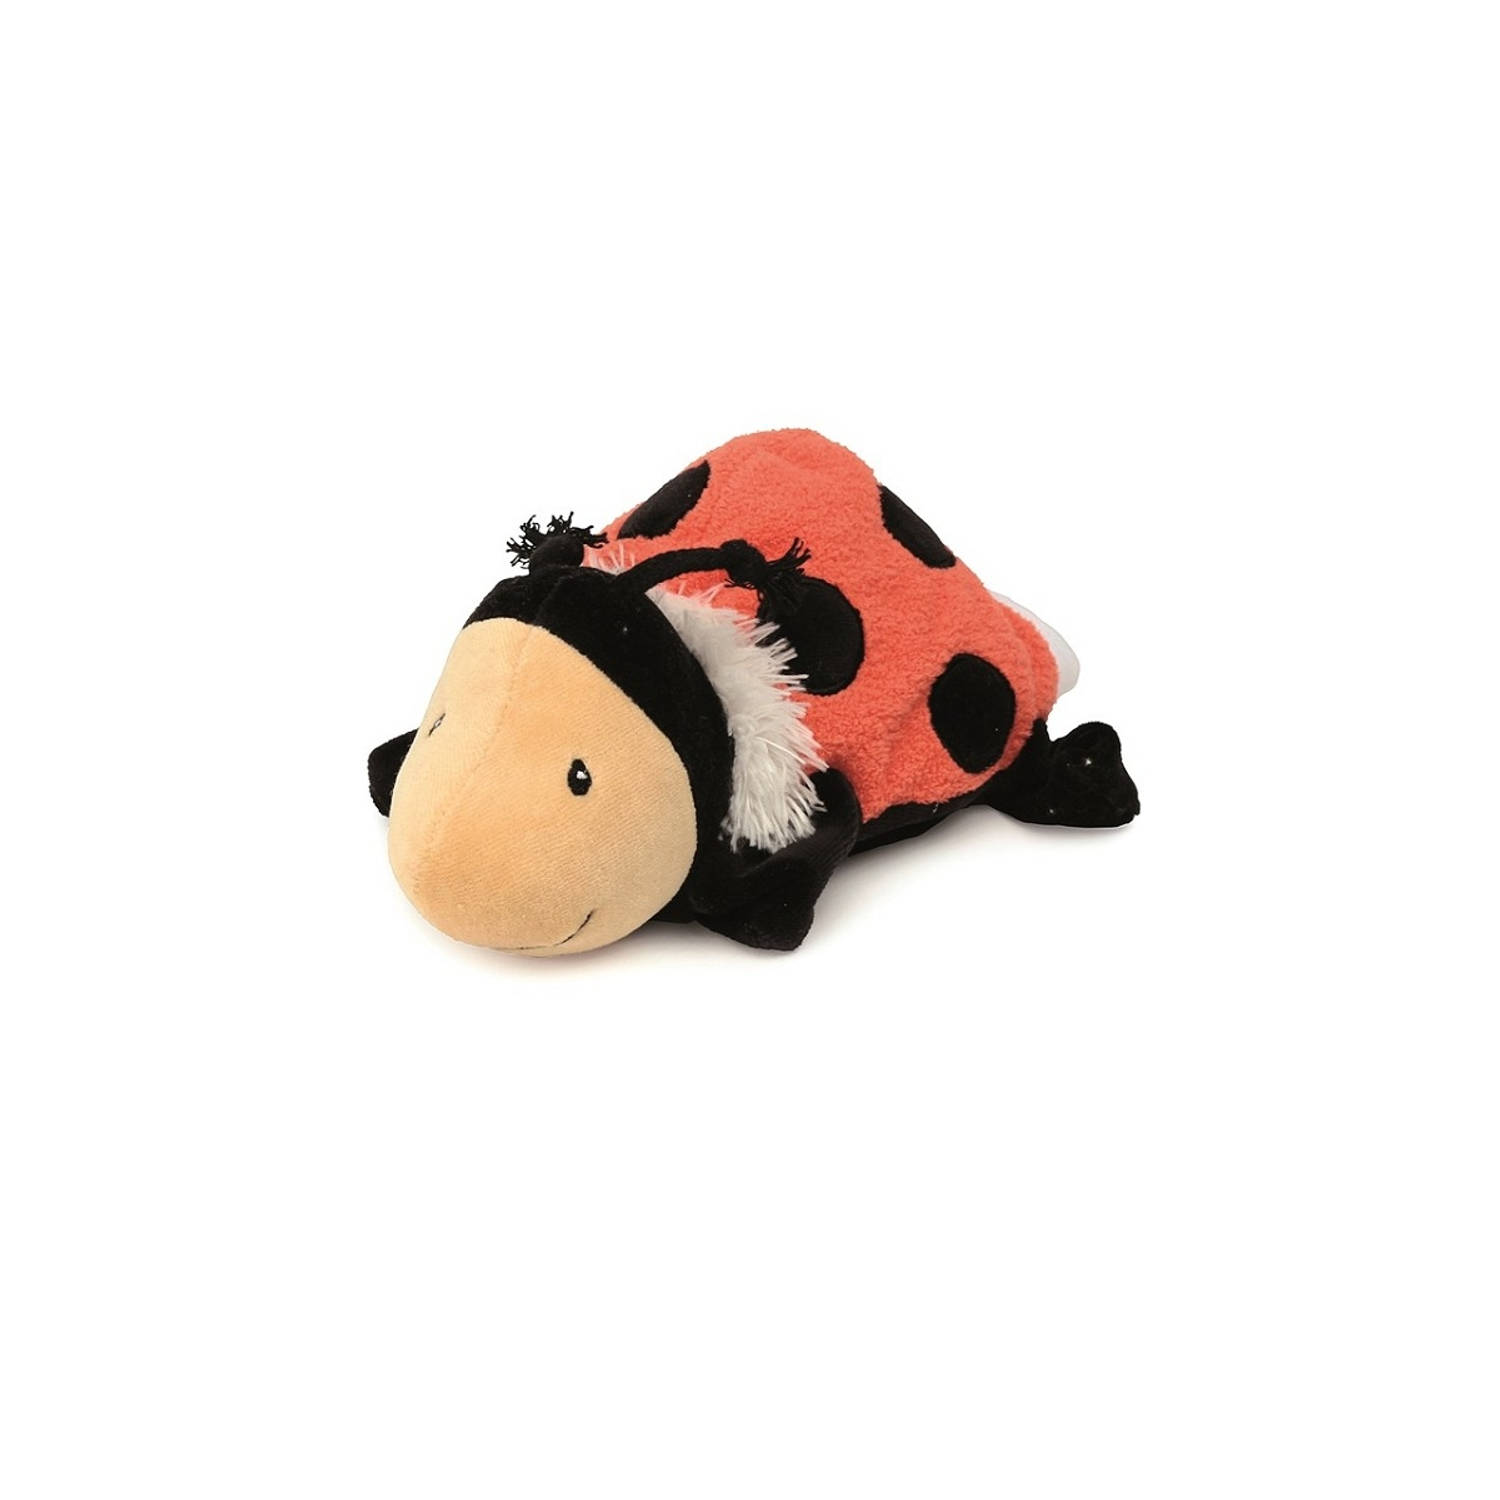 Egmont Toys Handpop dier lieveheersbeestje 24 cm